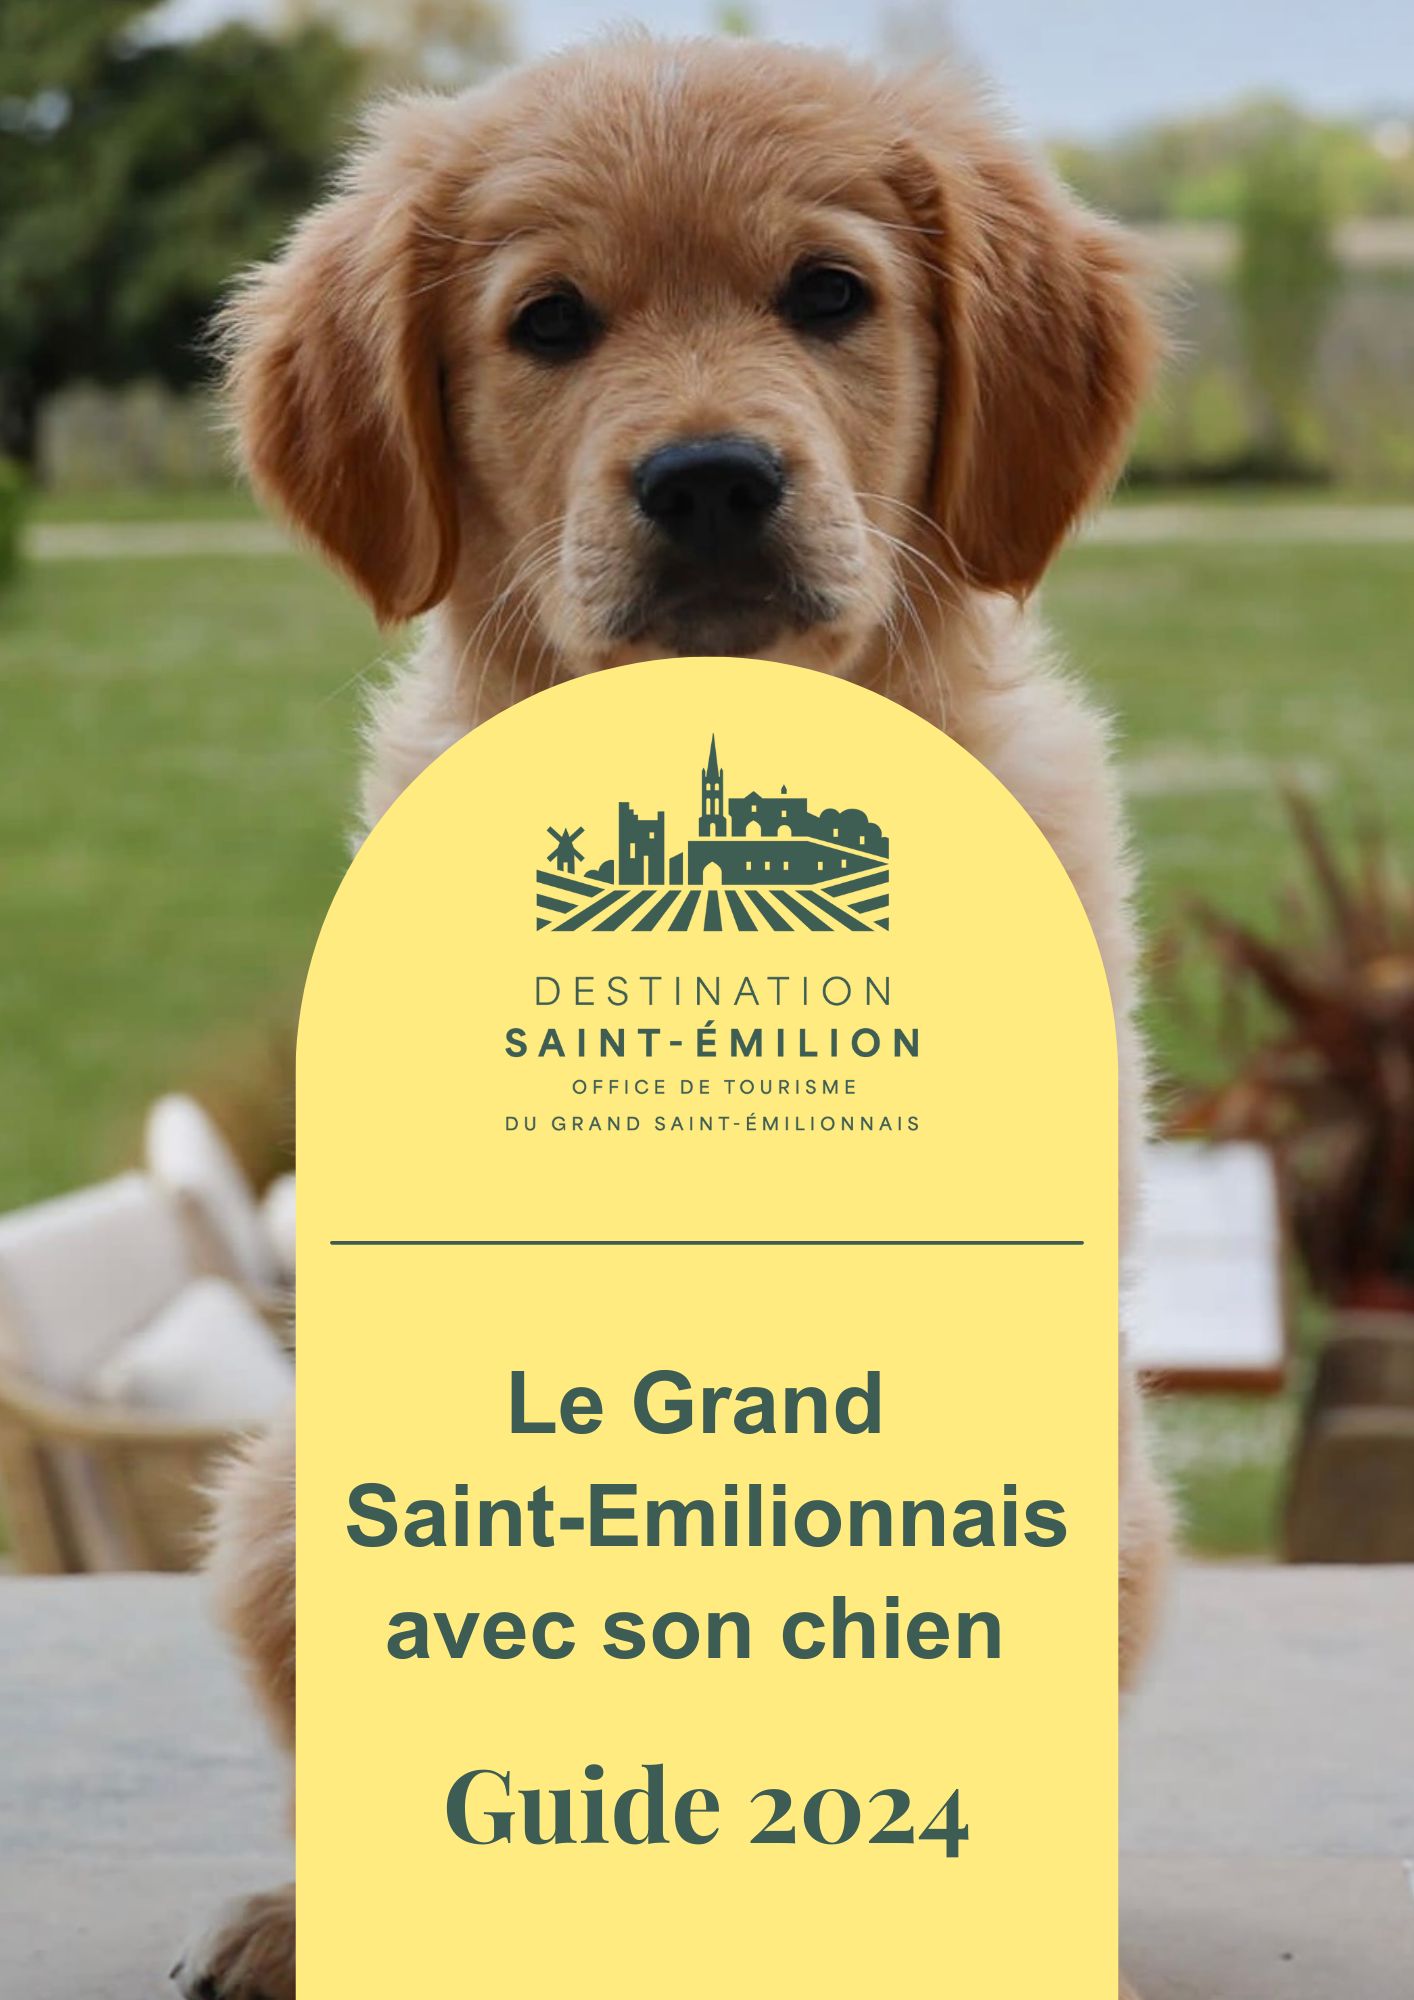 Gids 2024 - De omgeving van Saint-Emilion met uw hond